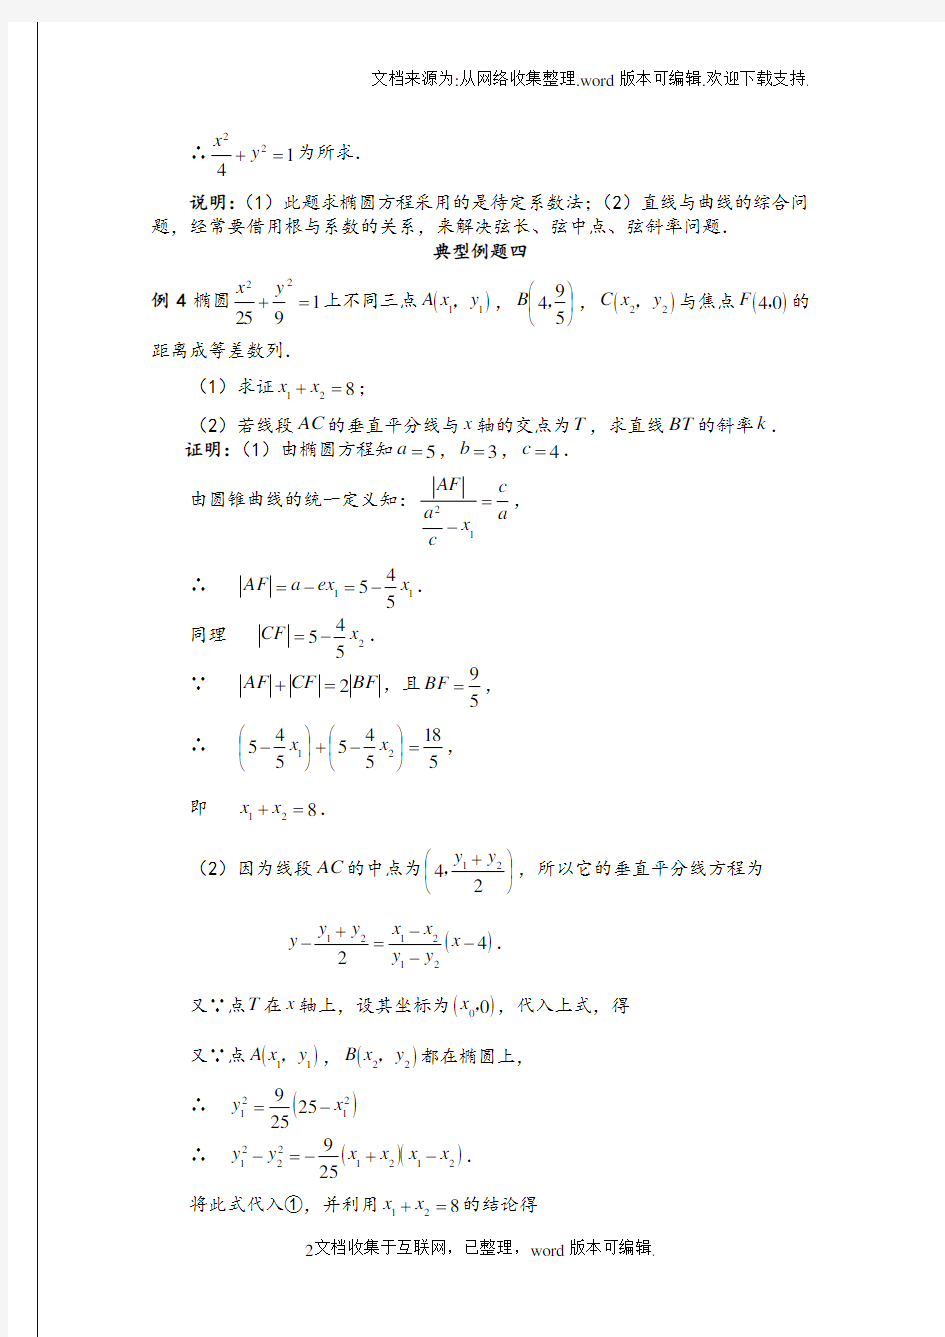 椭圆方程典型例题20例含标准答案